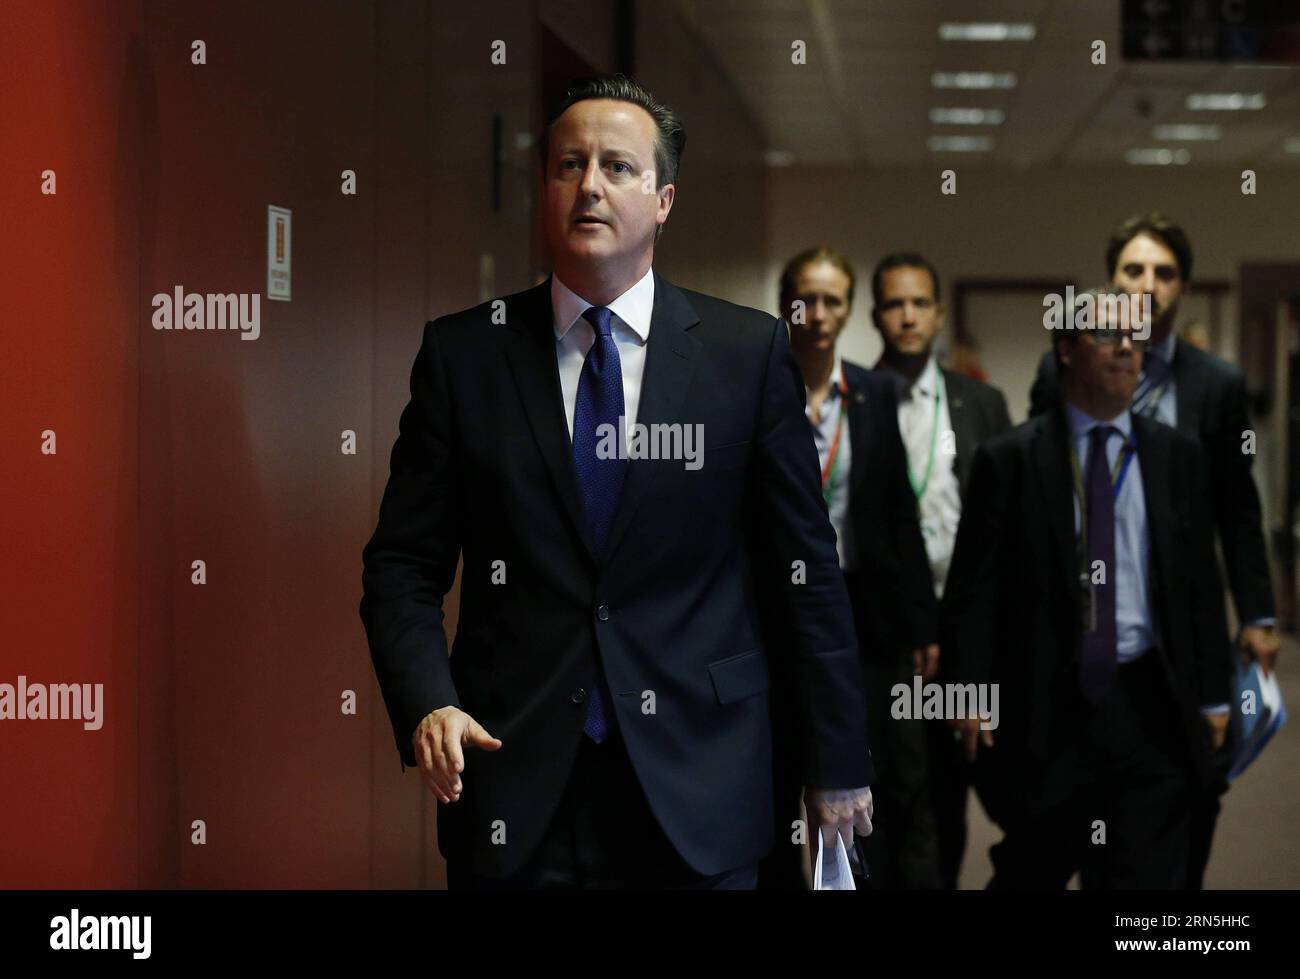 (150626) -- BRUXELLES, le 26 juin 2015 -- le Premier ministre britannique David Cameron arrive à une conférence de presse après un sommet de l'UE à Bruxelles, Belgique, le 26 juin 2015. SOMMET BELGIQUE-UE YexPingfan PUBLICATIONxNOTxINxCHN 150626 Bruxelles juin 26 2015 le Premier ministre britannique David Cameron arrive À une conférence de presse après le sommet UE à Bruxelles Belgique juin 26 2015 Belgique Sommet UE YexPingfan PUBLICATIONxNOTxINxCHN Banque D'Images